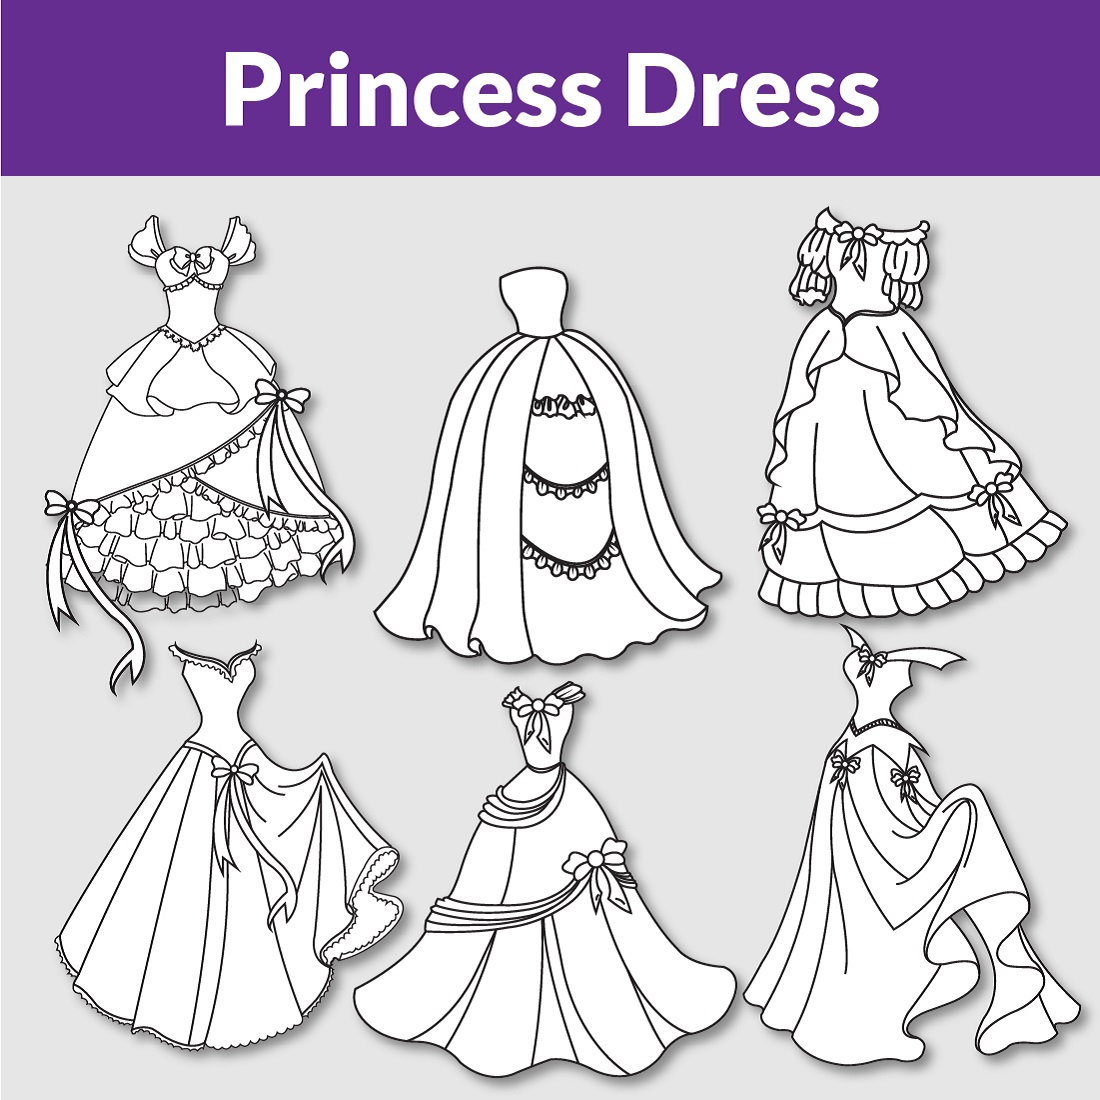 Princess dress master bundle